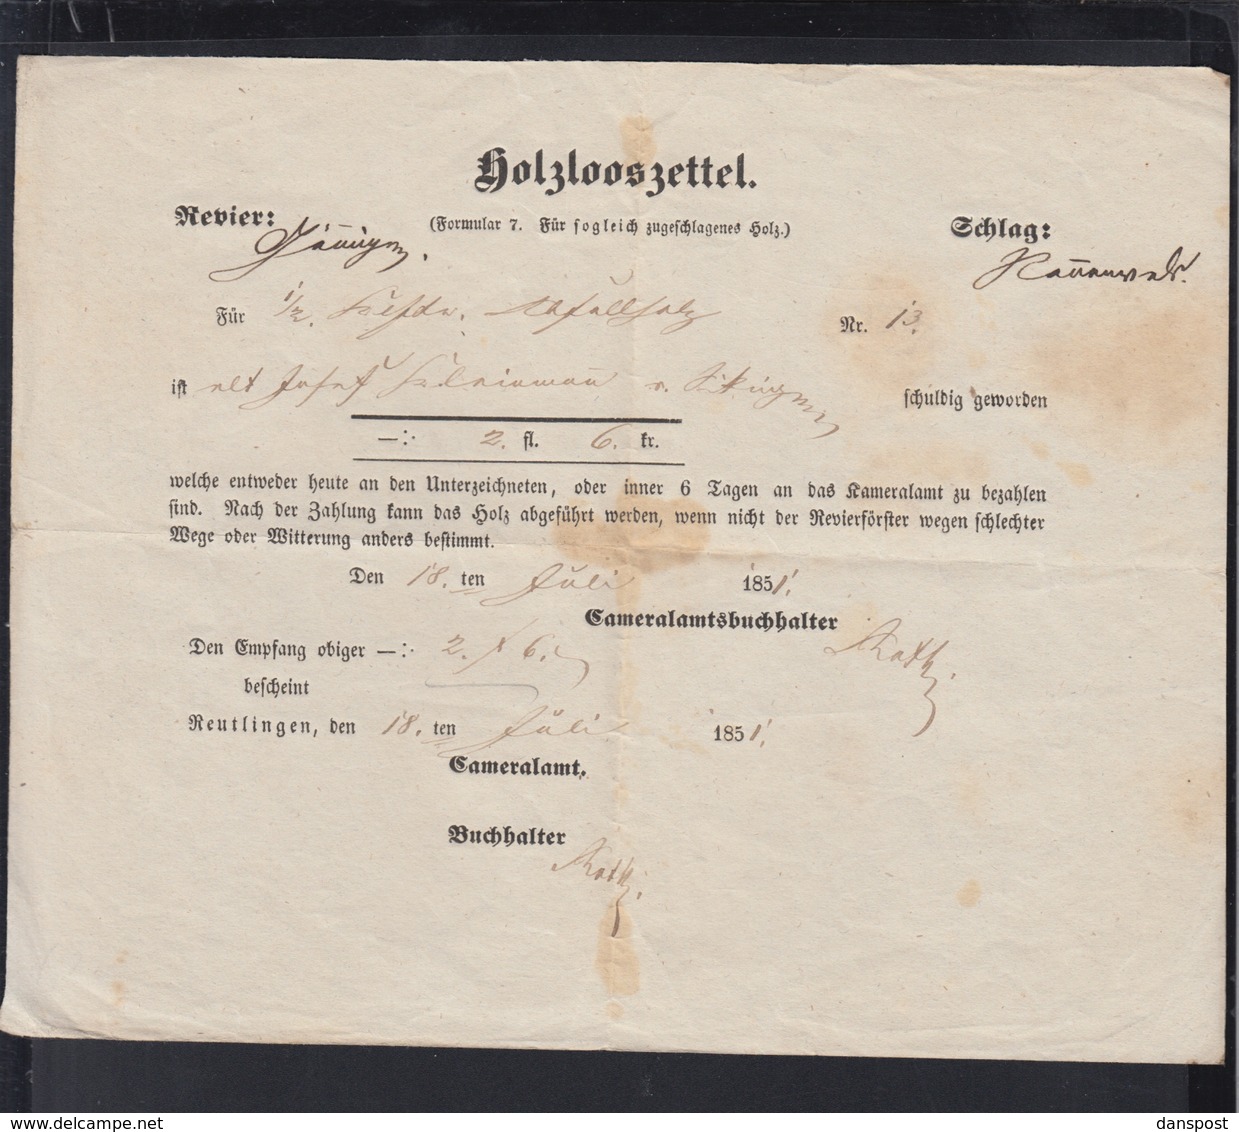 Reutlingen Holzlooszettel 1851 - Historische Dokumente